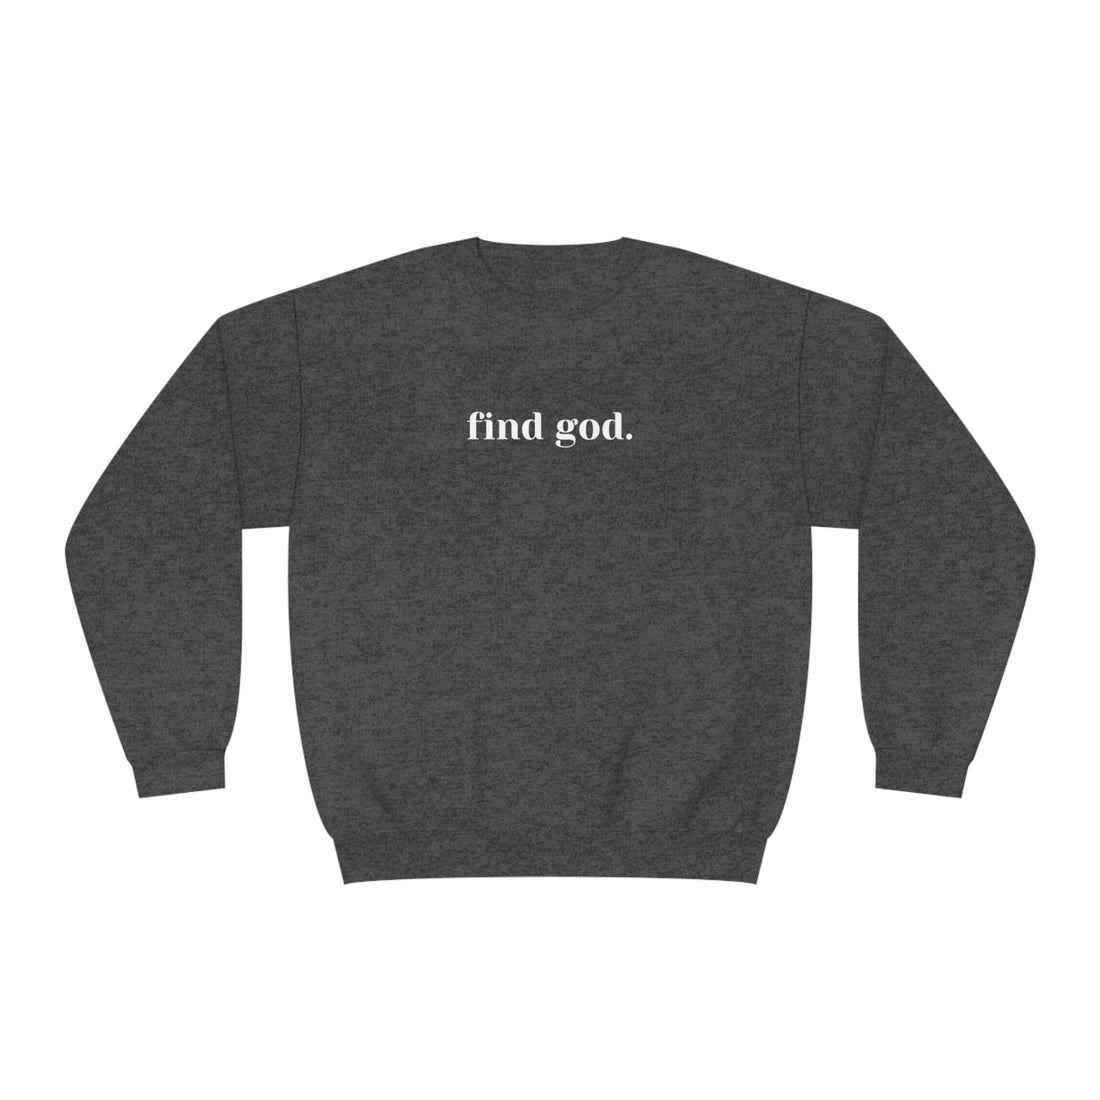 Find God. Unisex NuBlend® Crewneck Sweatshirt